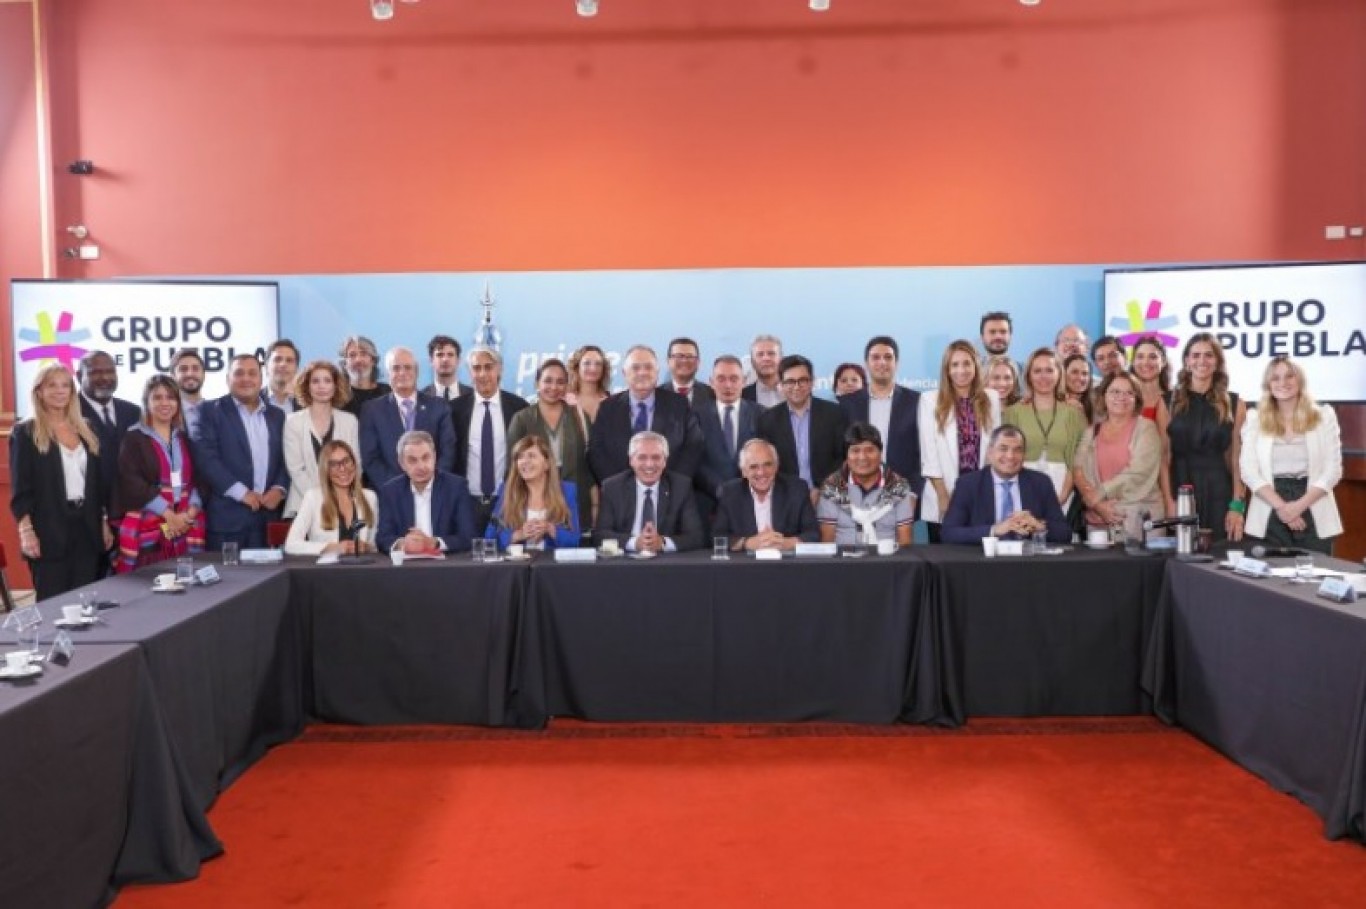 El Gobierno anunció la vuelta de la Argentina a la Unasur tras una reunión con el Grupo de Puebla